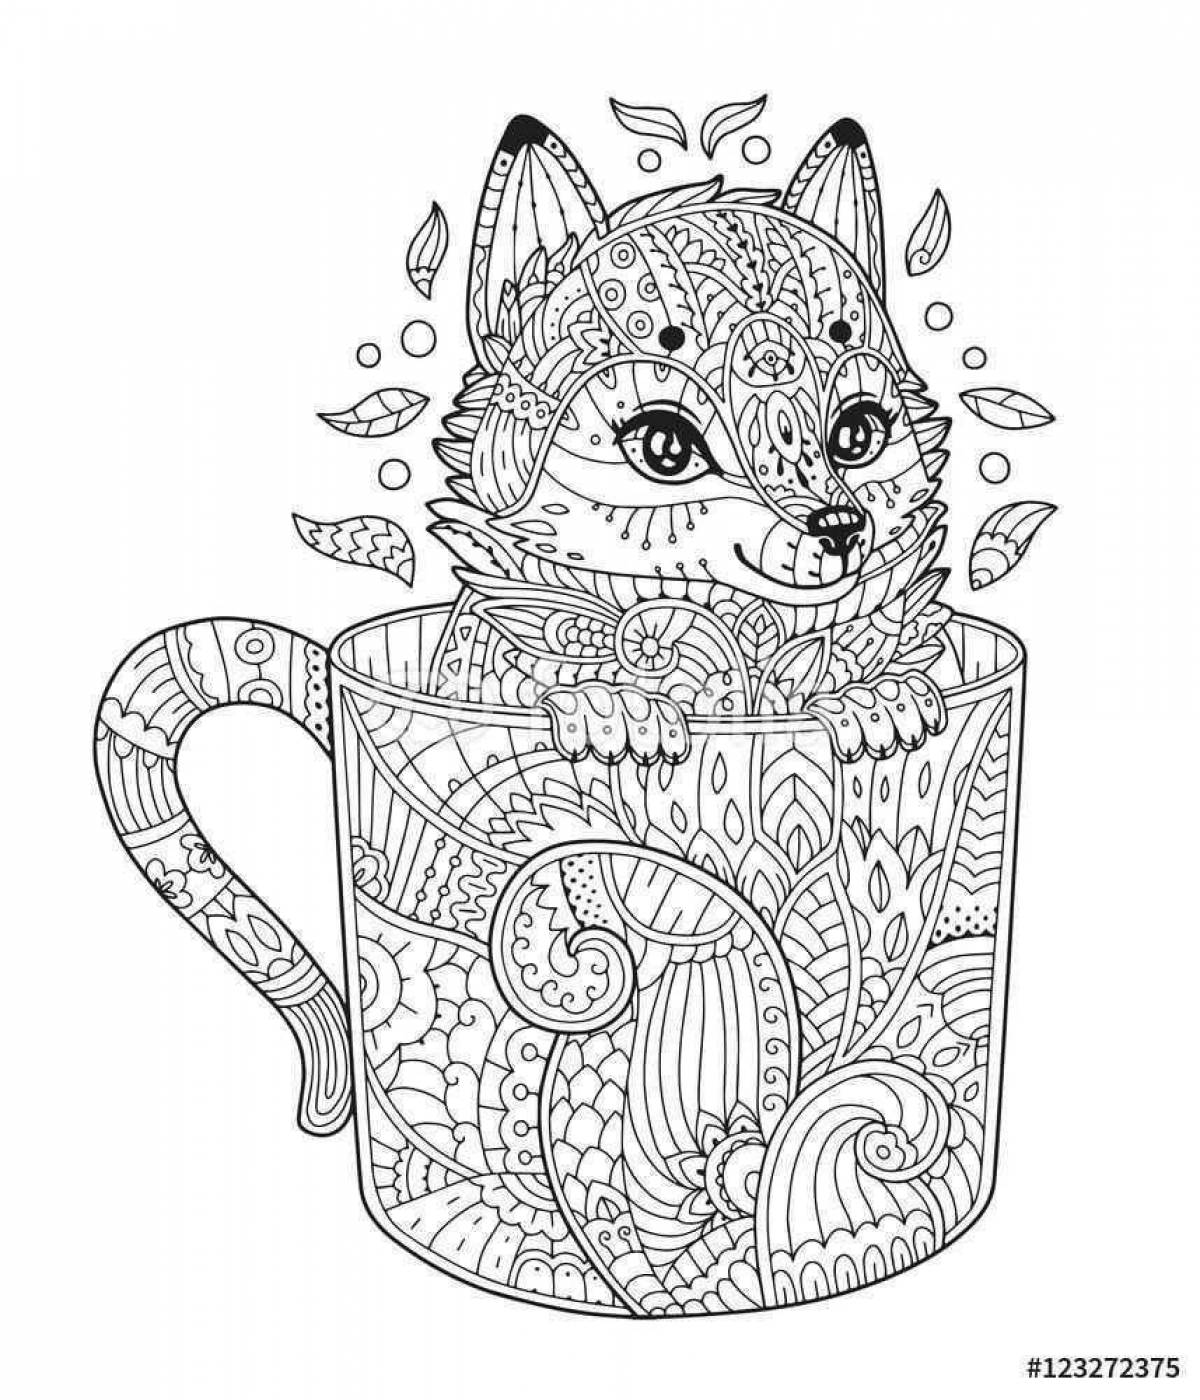 Kitten in a cup #3